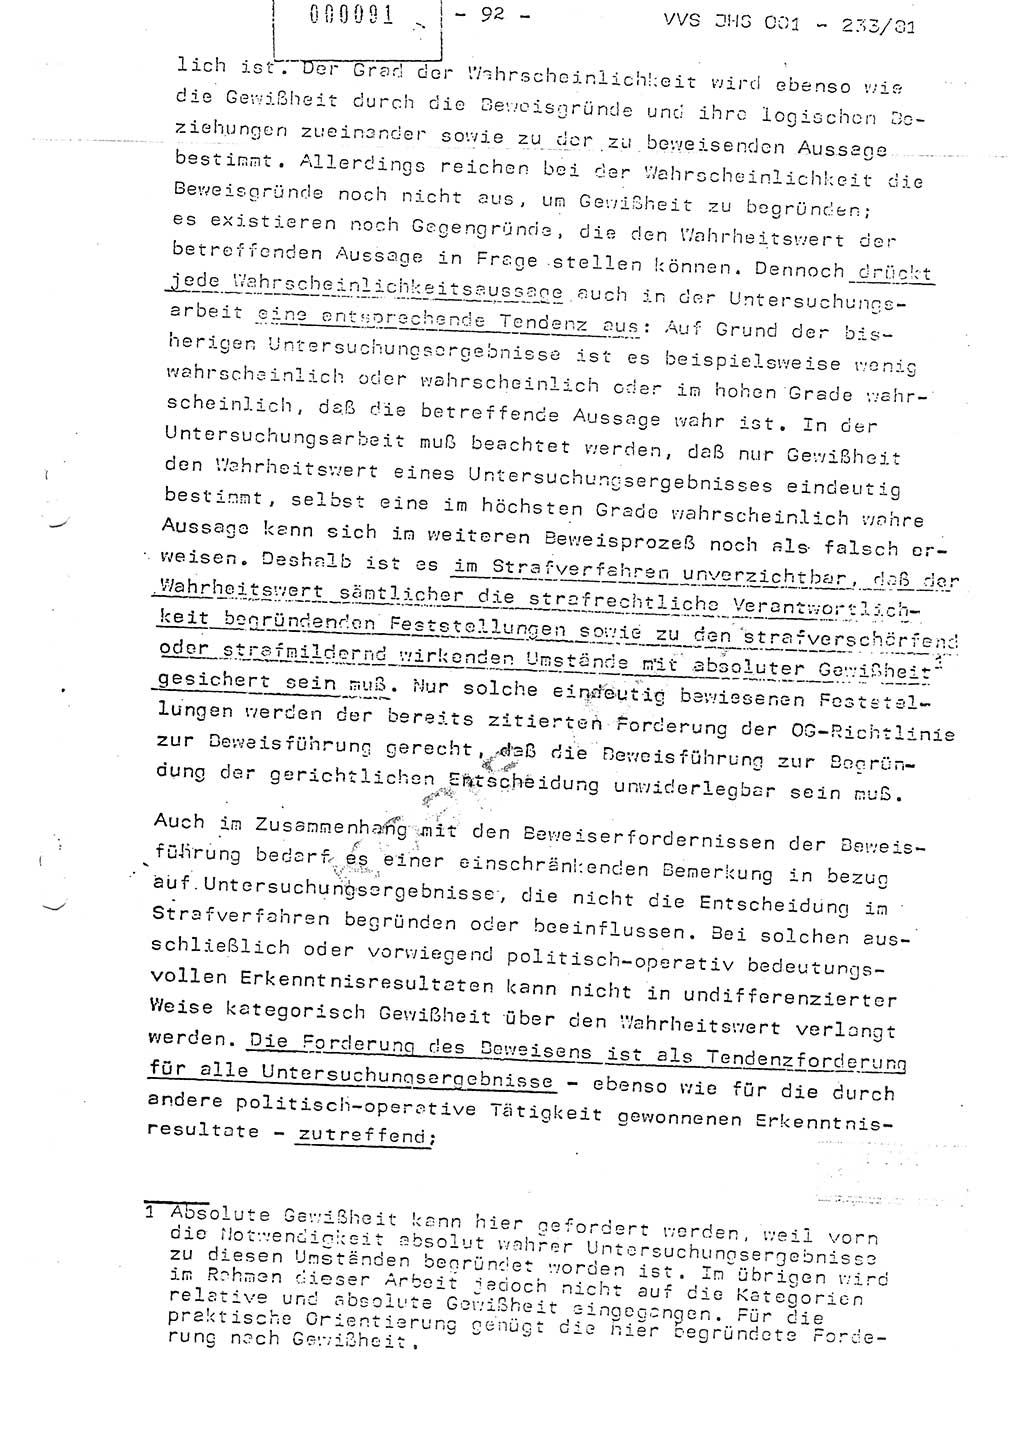 Dissertation Oberstleutnant Horst Zank (JHS), Oberstleutnant Dr. Karl-Heinz Knoblauch (JHS), Oberstleutnant Gustav-Adolf Kowalewski (HA Ⅸ), Oberstleutnant Wolfgang Plötner (HA Ⅸ), Ministerium für Staatssicherheit (MfS) [Deutsche Demokratische Republik (DDR)], Juristische Hochschule (JHS), Vertrauliche Verschlußsache (VVS) o001-233/81, Potsdam 1981, Blatt 92 (Diss. MfS DDR JHS VVS o001-233/81 1981, Bl. 92)